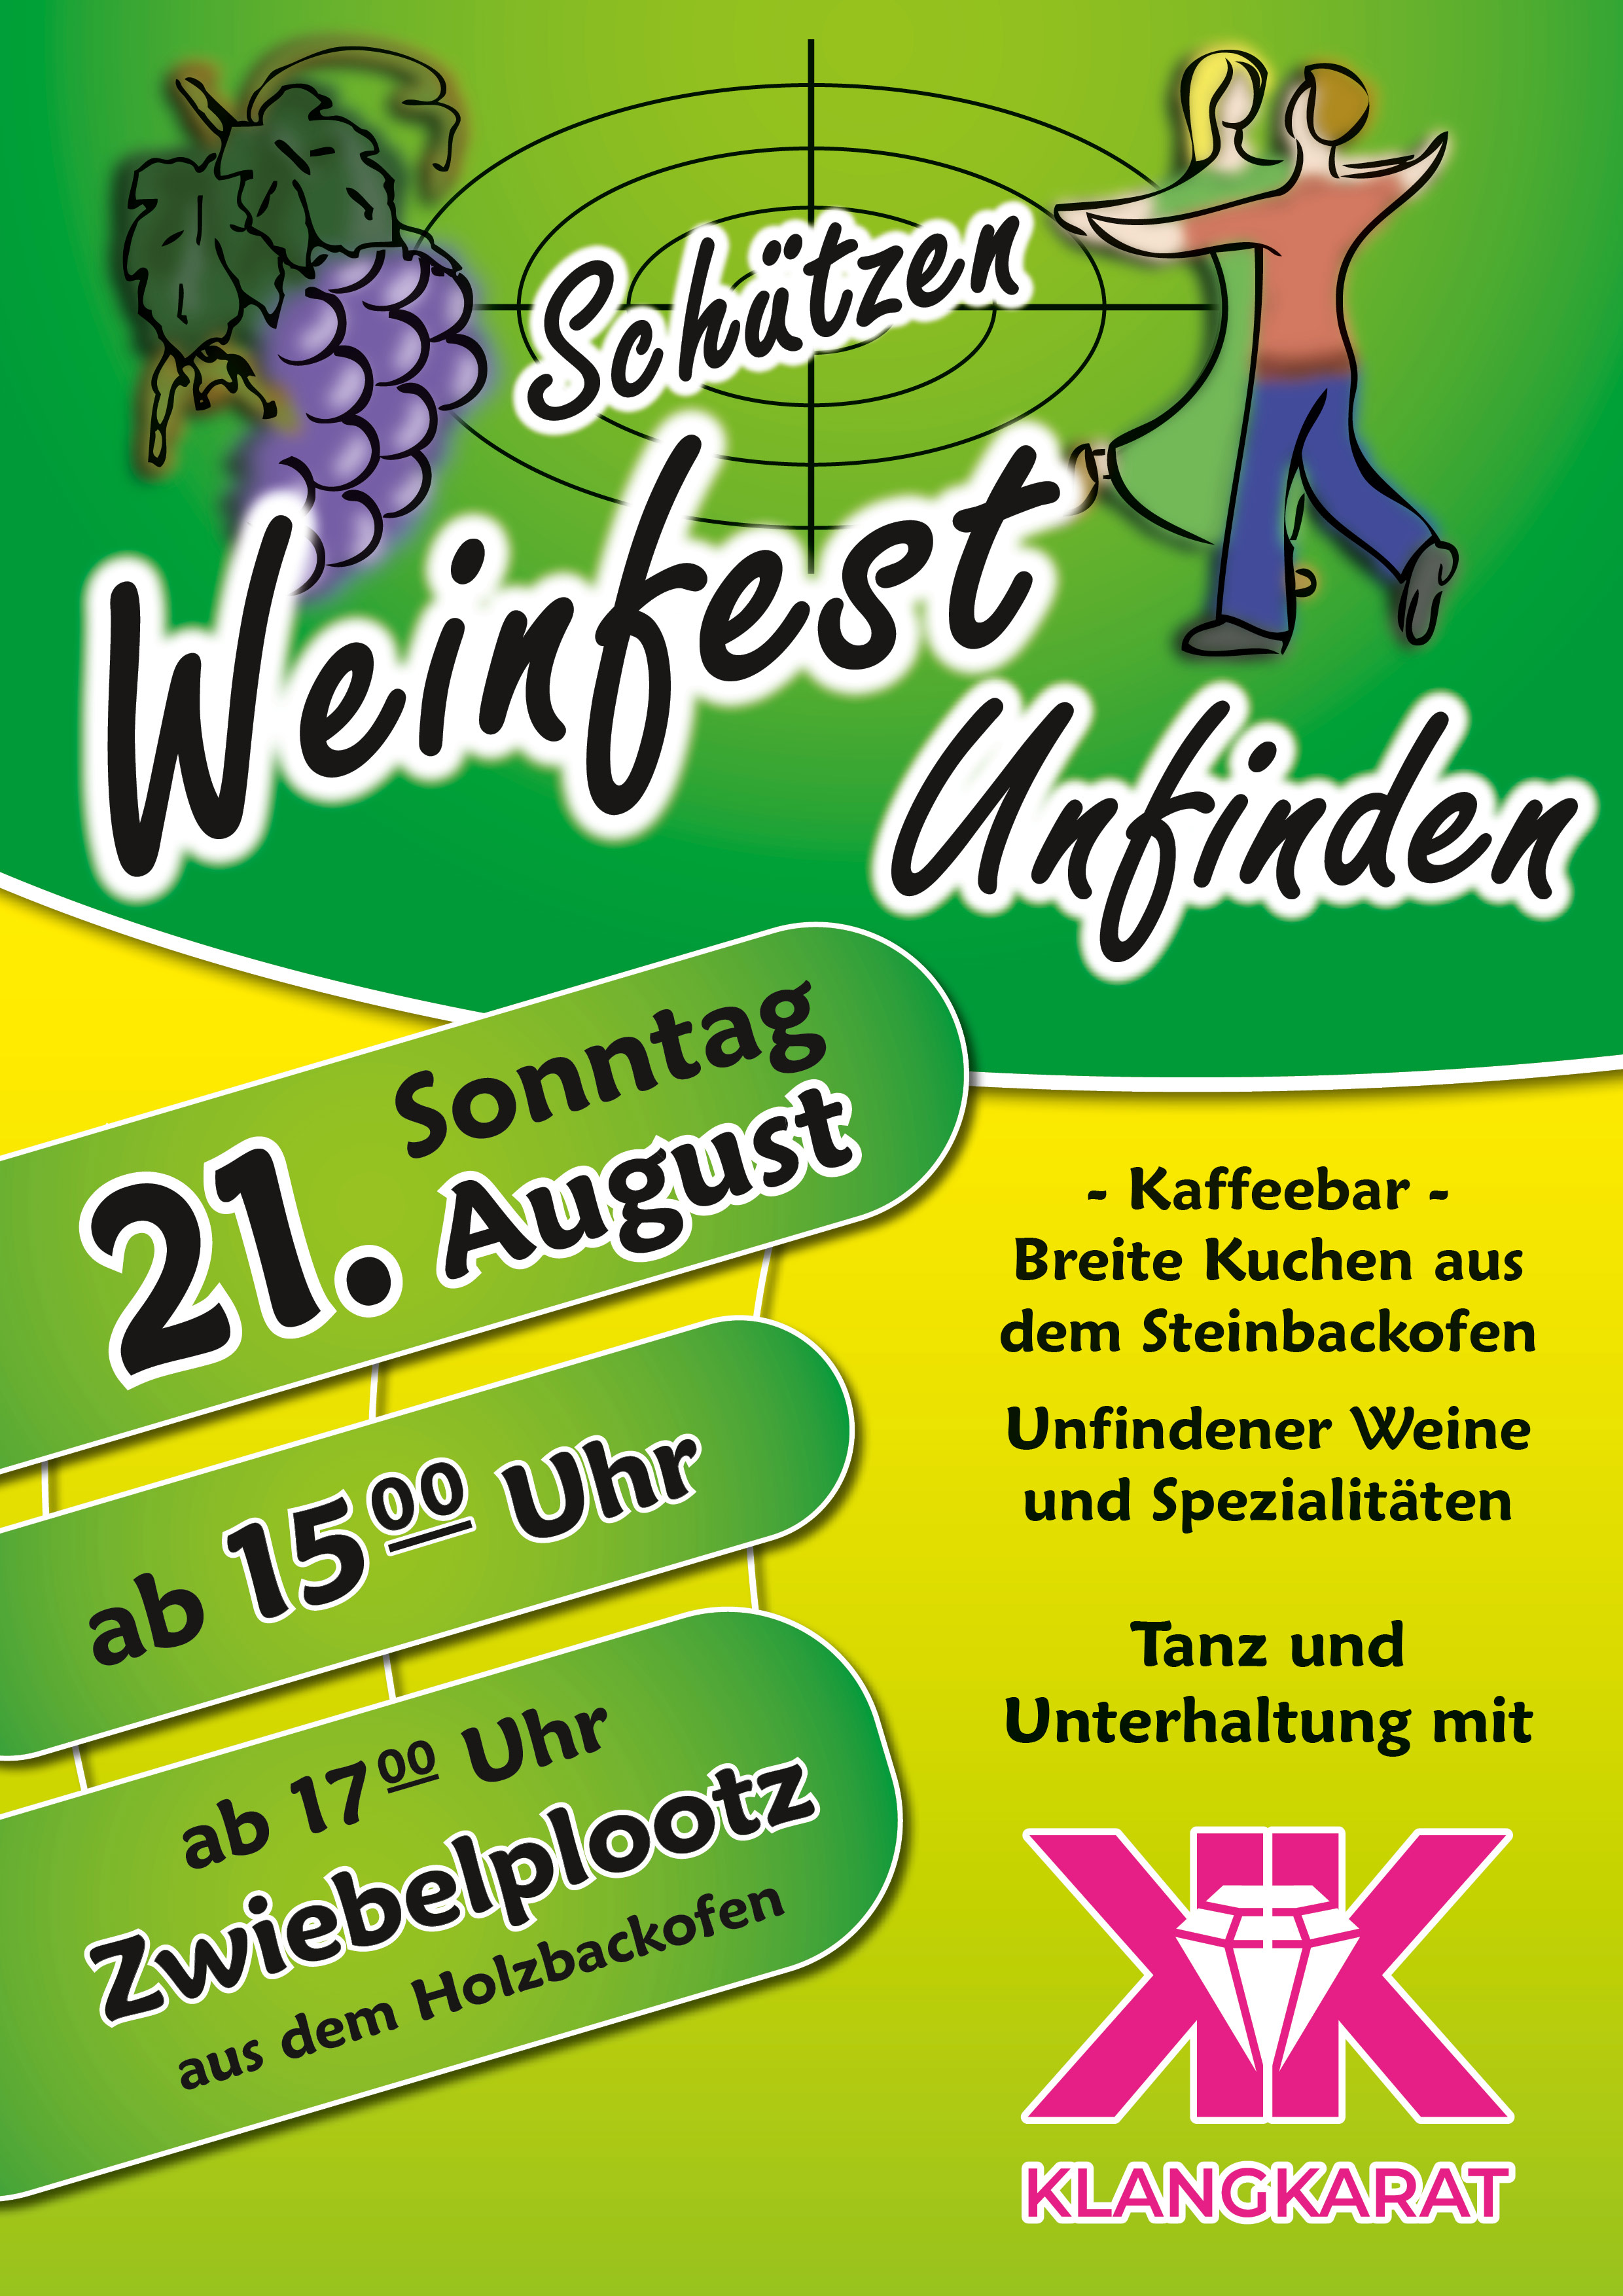 Schützen Weinfest am 21. August 2022 in Unfinden